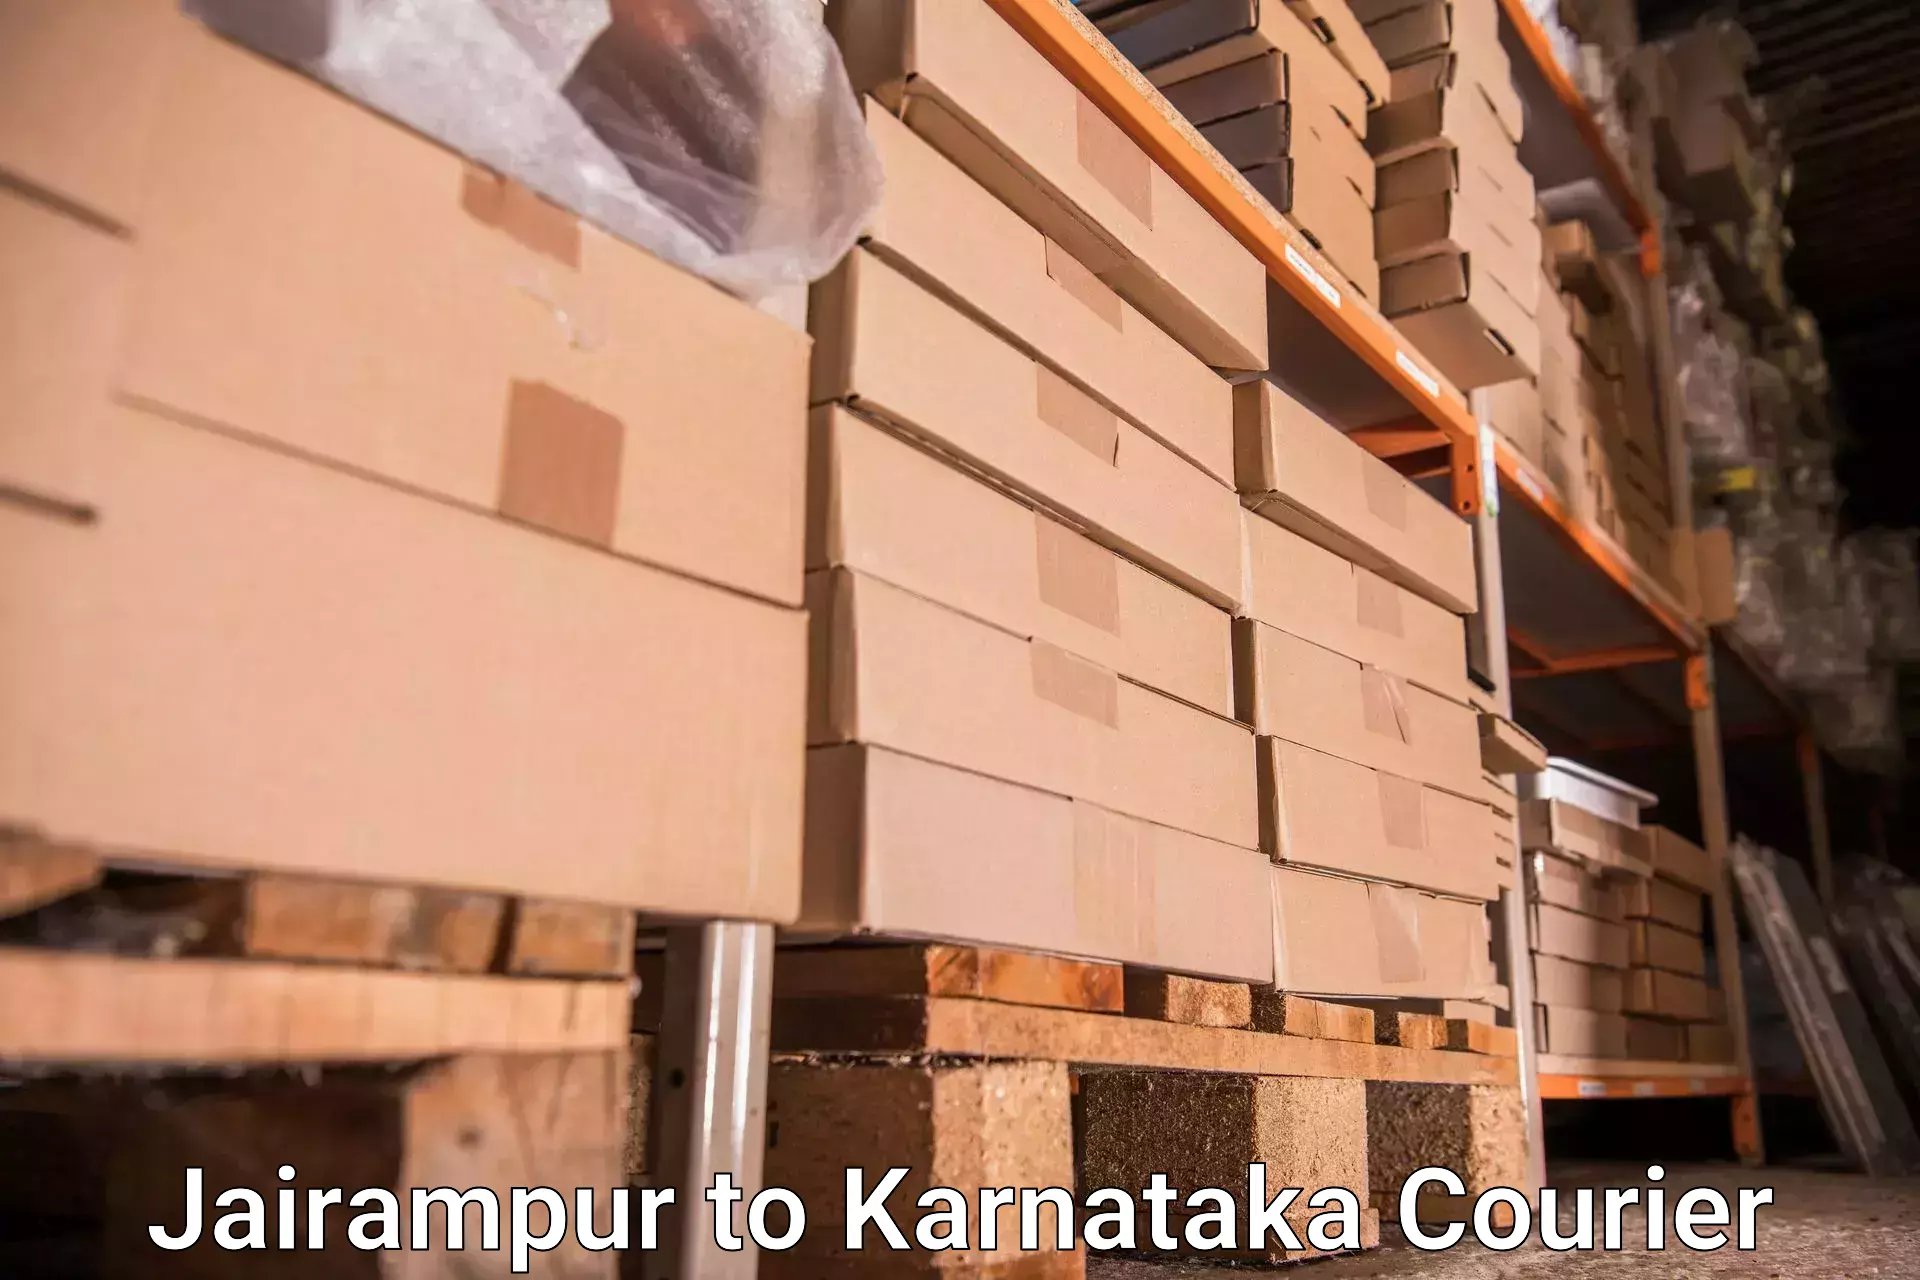 Light baggage courier Jairampur to Kanjarakatte